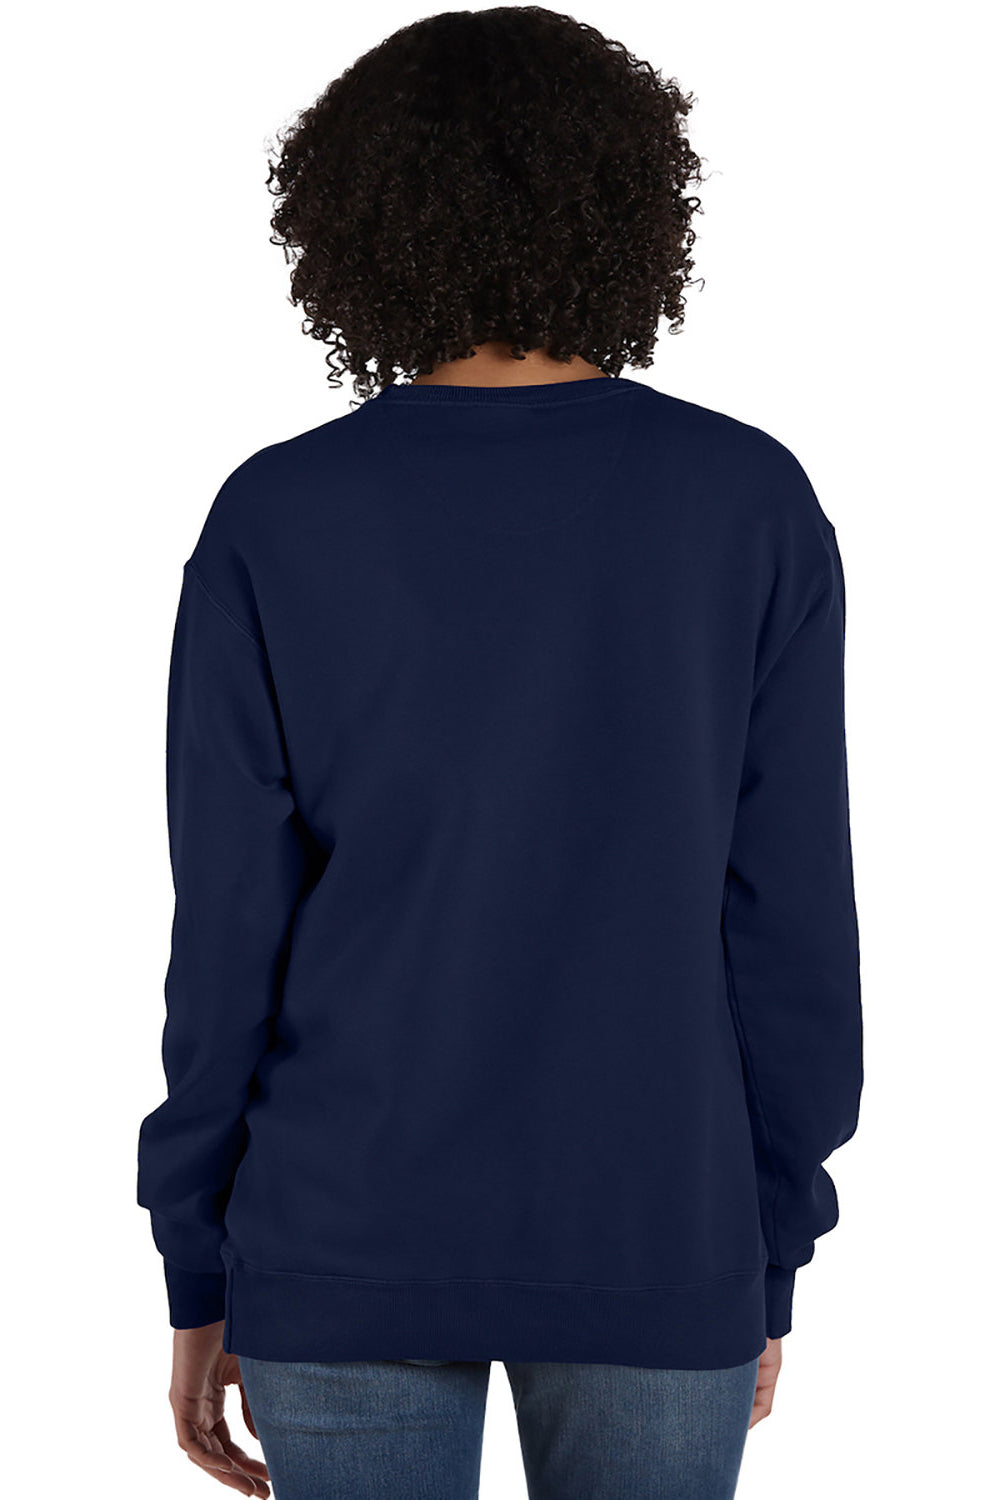 ComfortWash by Hanes GDH400 Mens Crewneck Sweatshirt Navy Blue Back